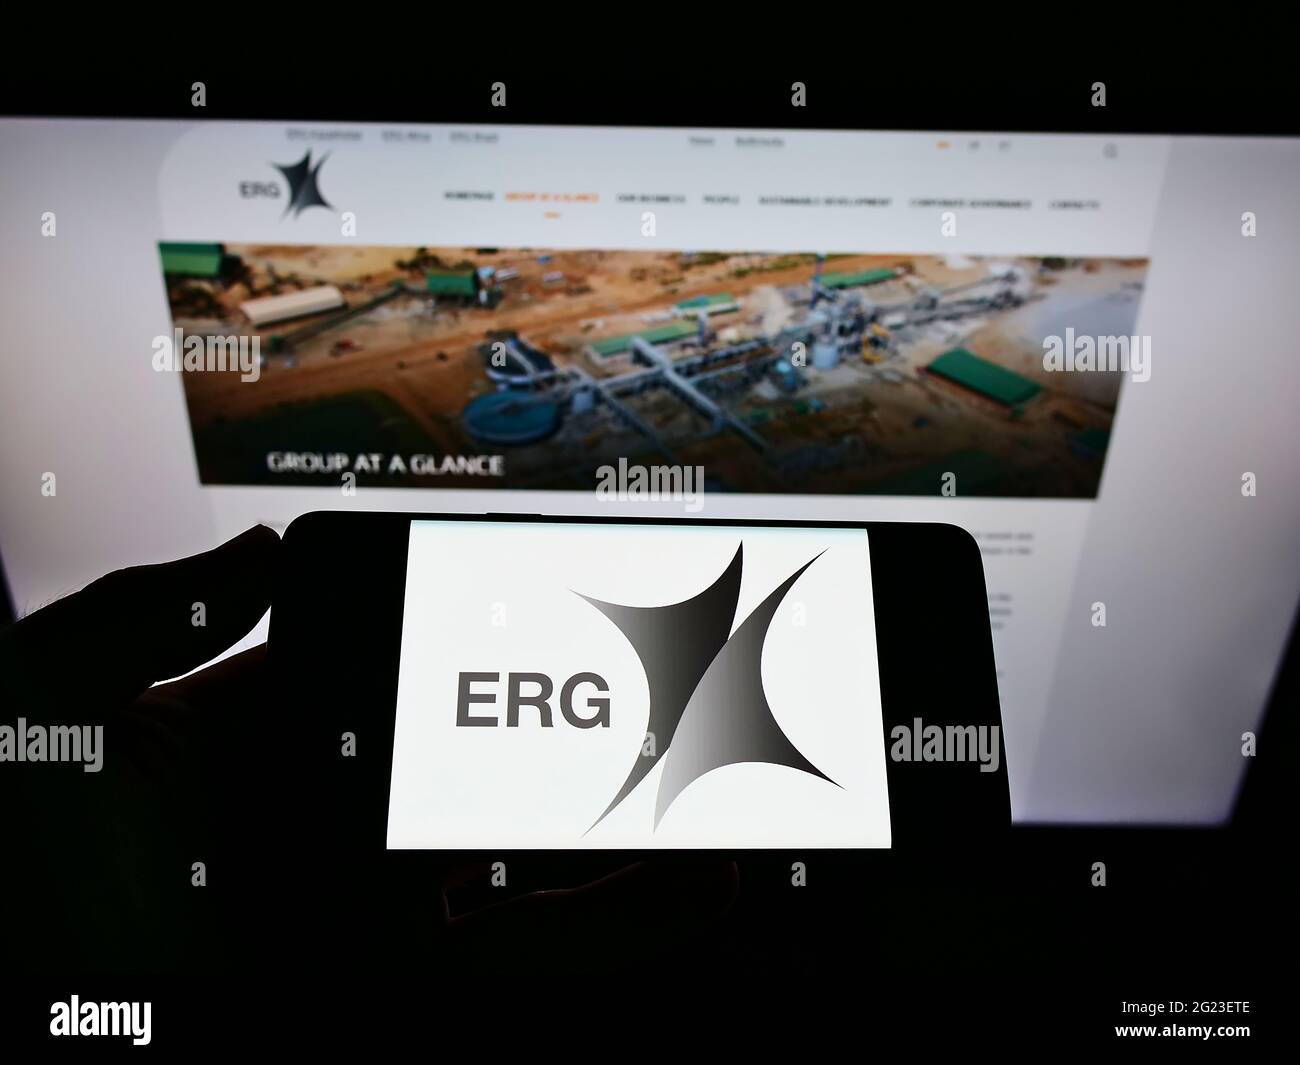 Persona che detiene il telefono cellulare con il logo della società mineraria Eurasian Resources Group (ERG) sullo schermo davanti alla pagina web. Mettere a fuoco il display del telefono. Foto Stock